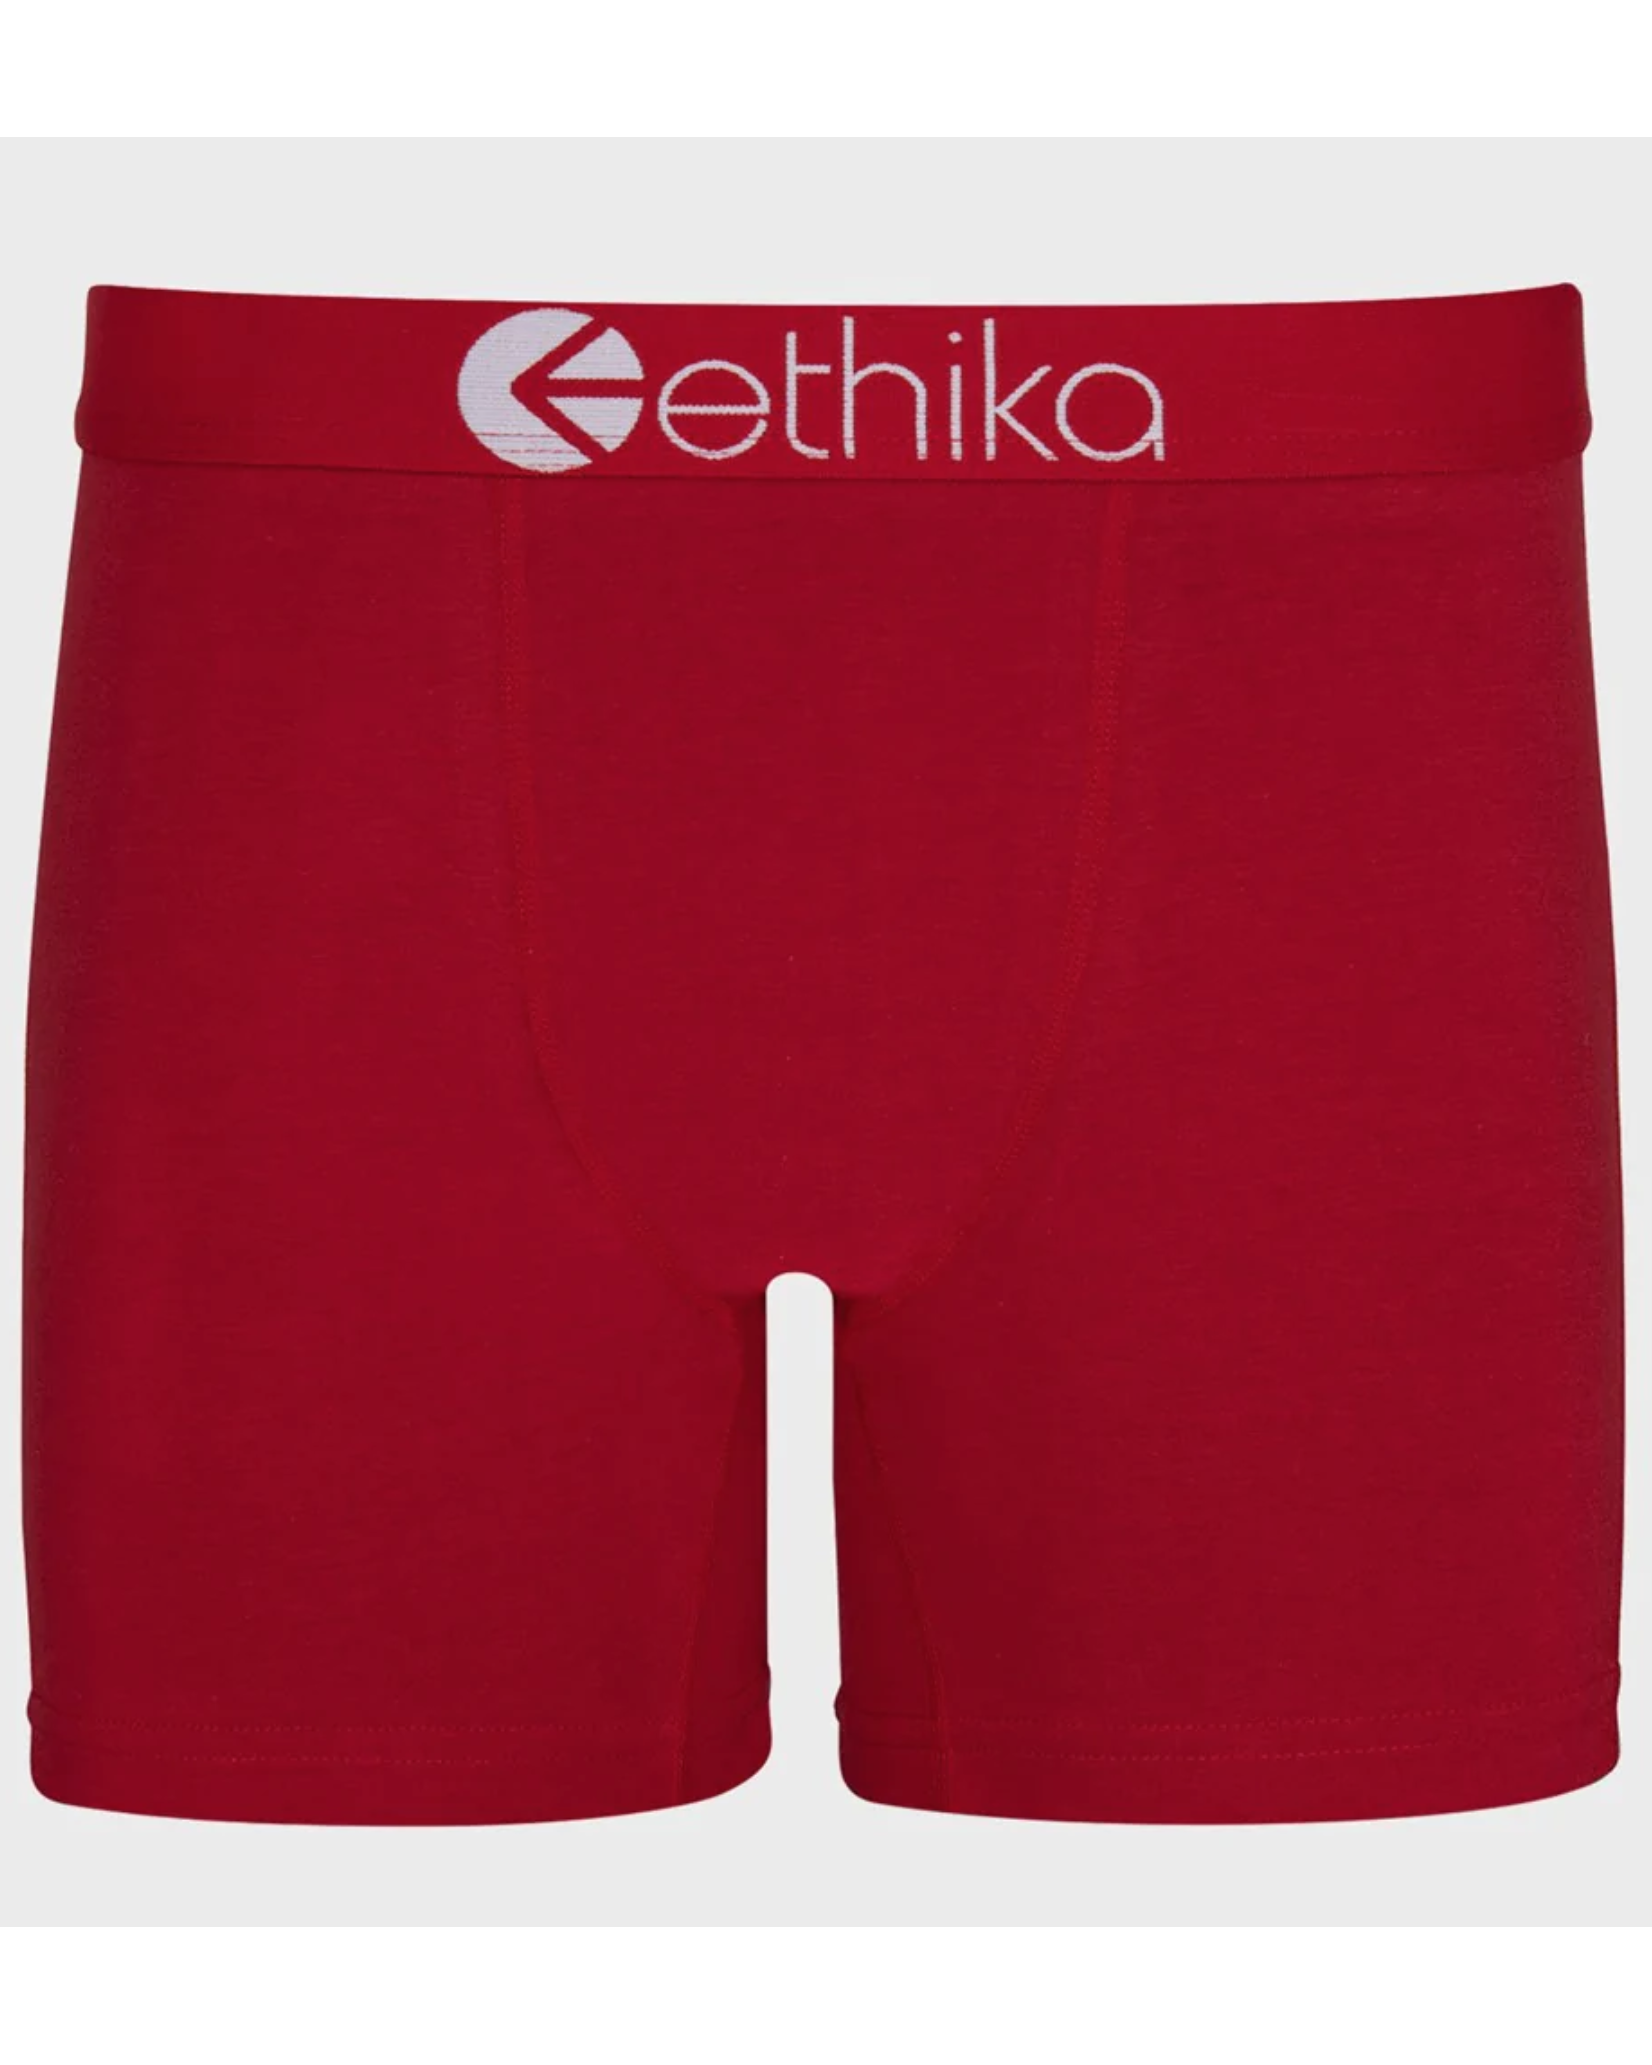 Ethika Mens Cayenne Red Mid Staple Underwear